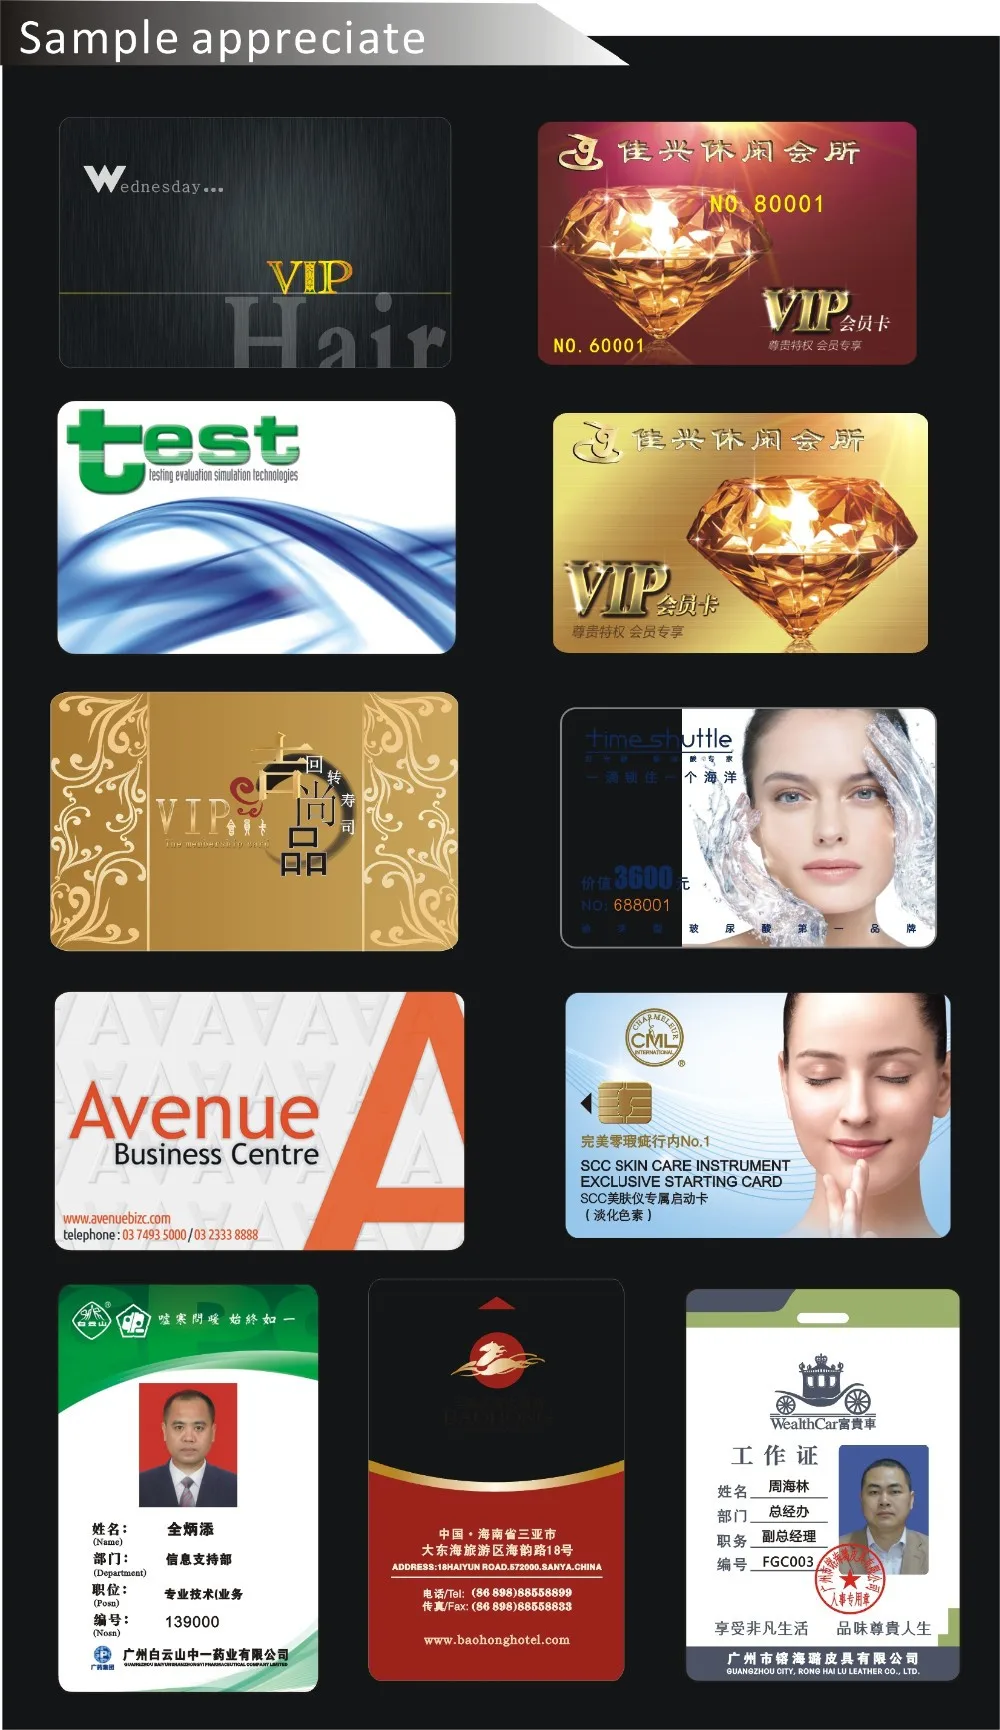 Бесплатная доставка печати 10 шт. 13,56 мГц карт IC разрешение на работу, фото карты, стандартный размер кредитных карт (85X54X0,8 мм) наборы карт